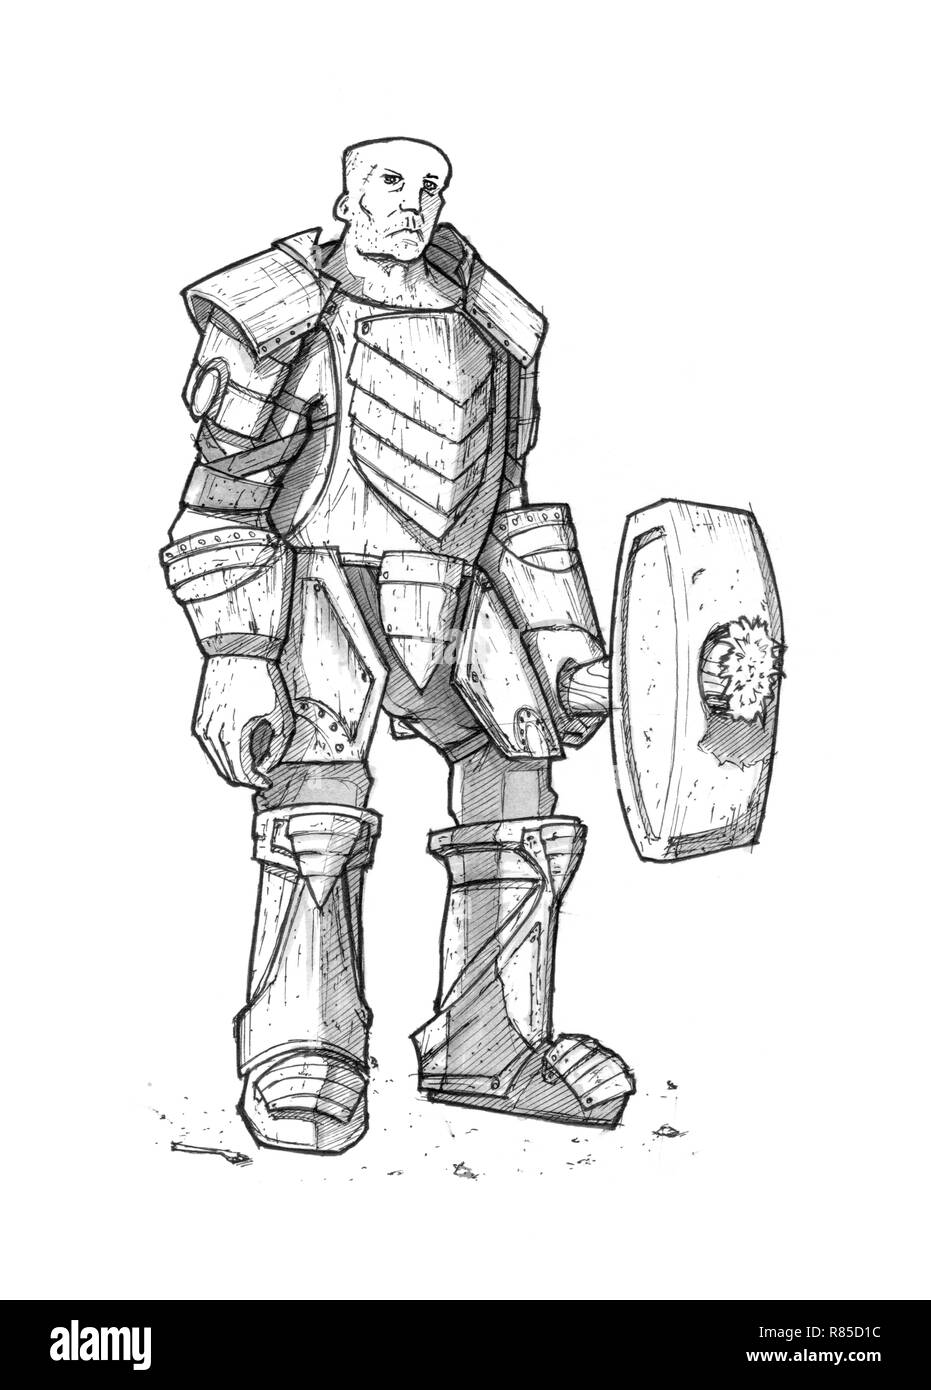 Dessin à l'encre noire de Fantasy Warrior chevalier en armure avec un marteau ou maillet Banque D'Images